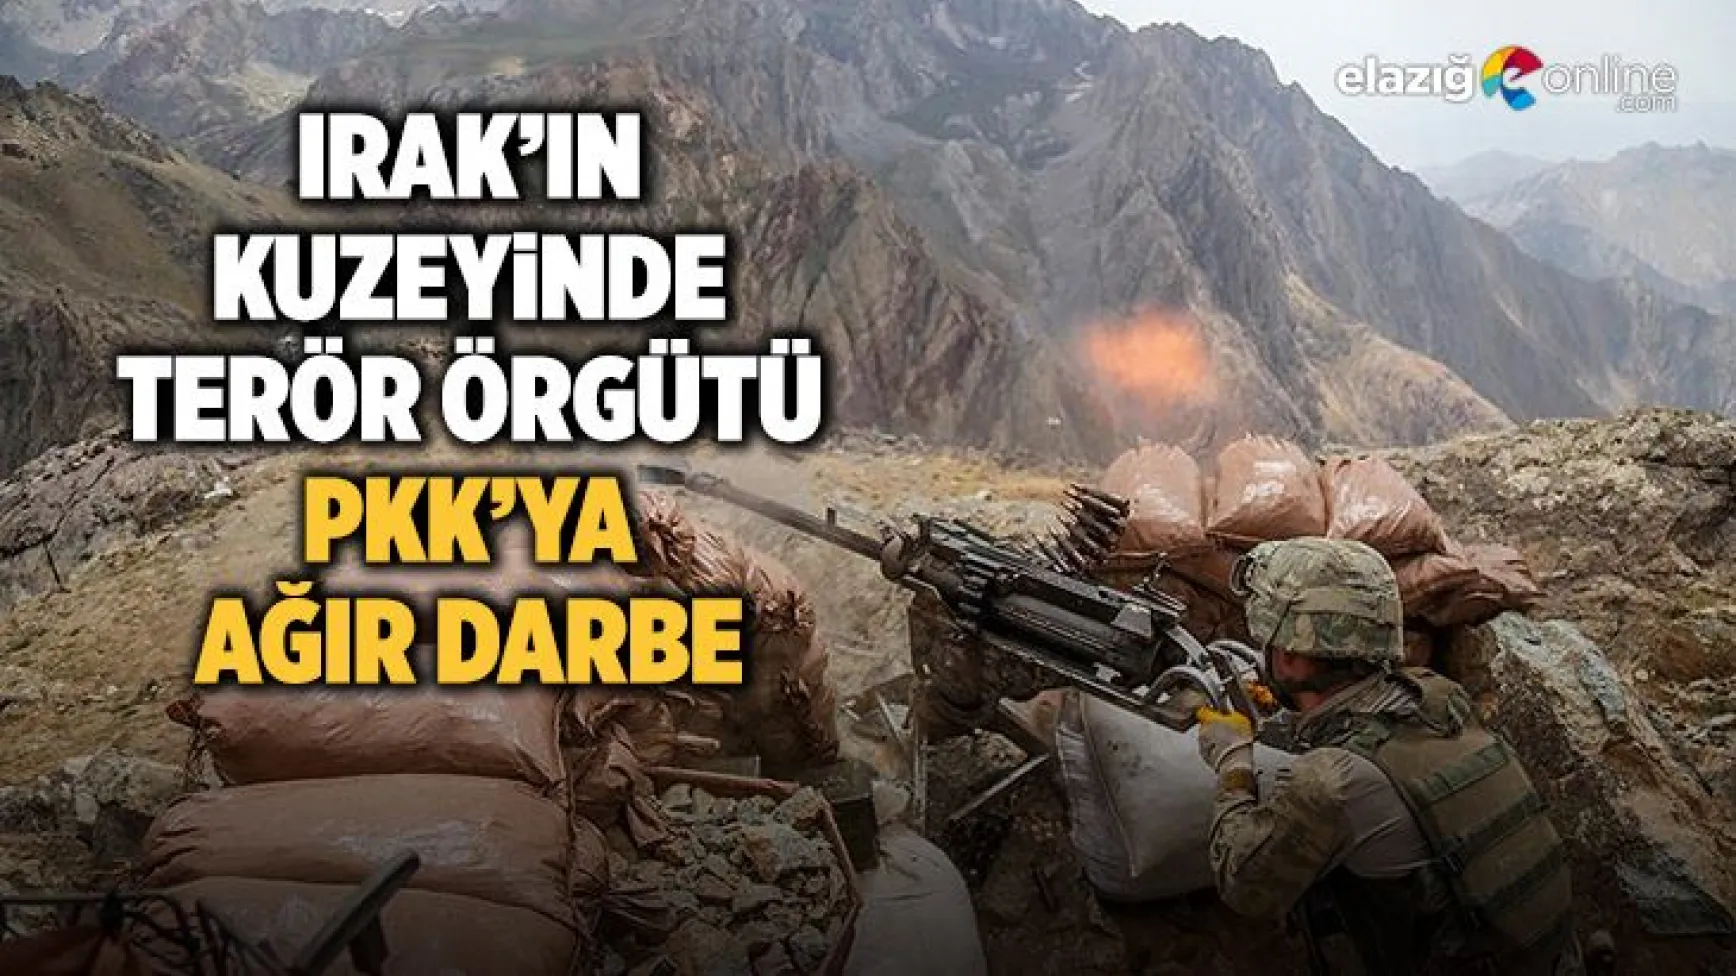 Irak’ın kuzeyinde terör örgütü PKK’ya ağır darbe